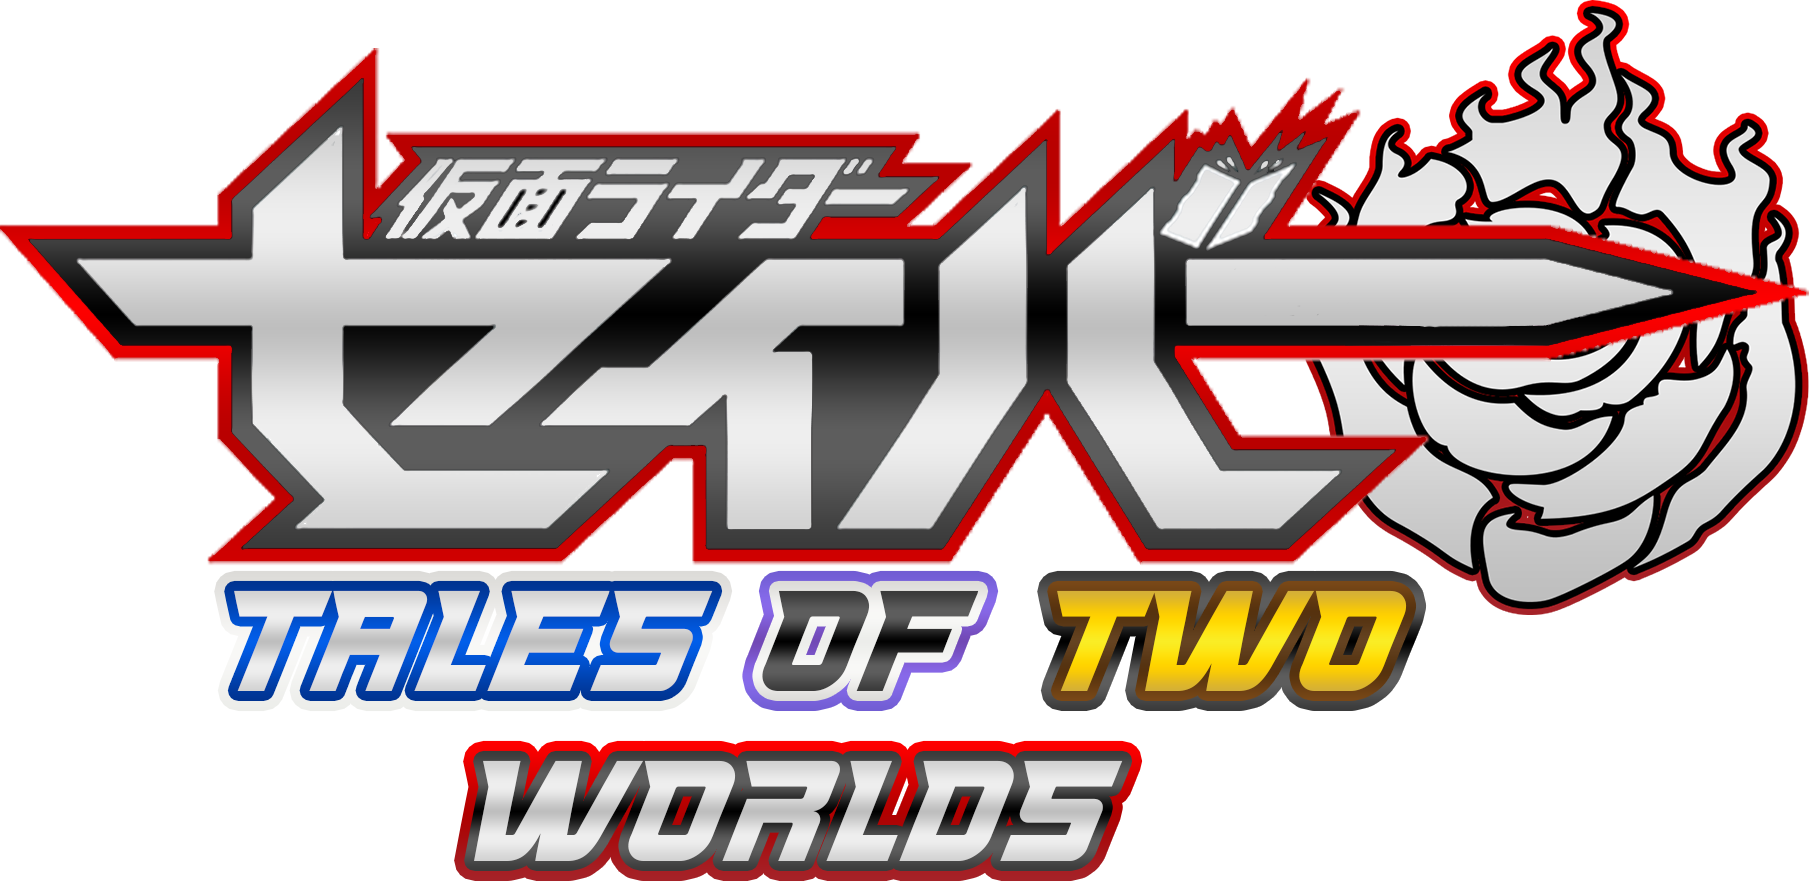 Kamen Rider Saber Tale Of Two Worlds Kamen Rider Fan Fiction Wiki Fandom